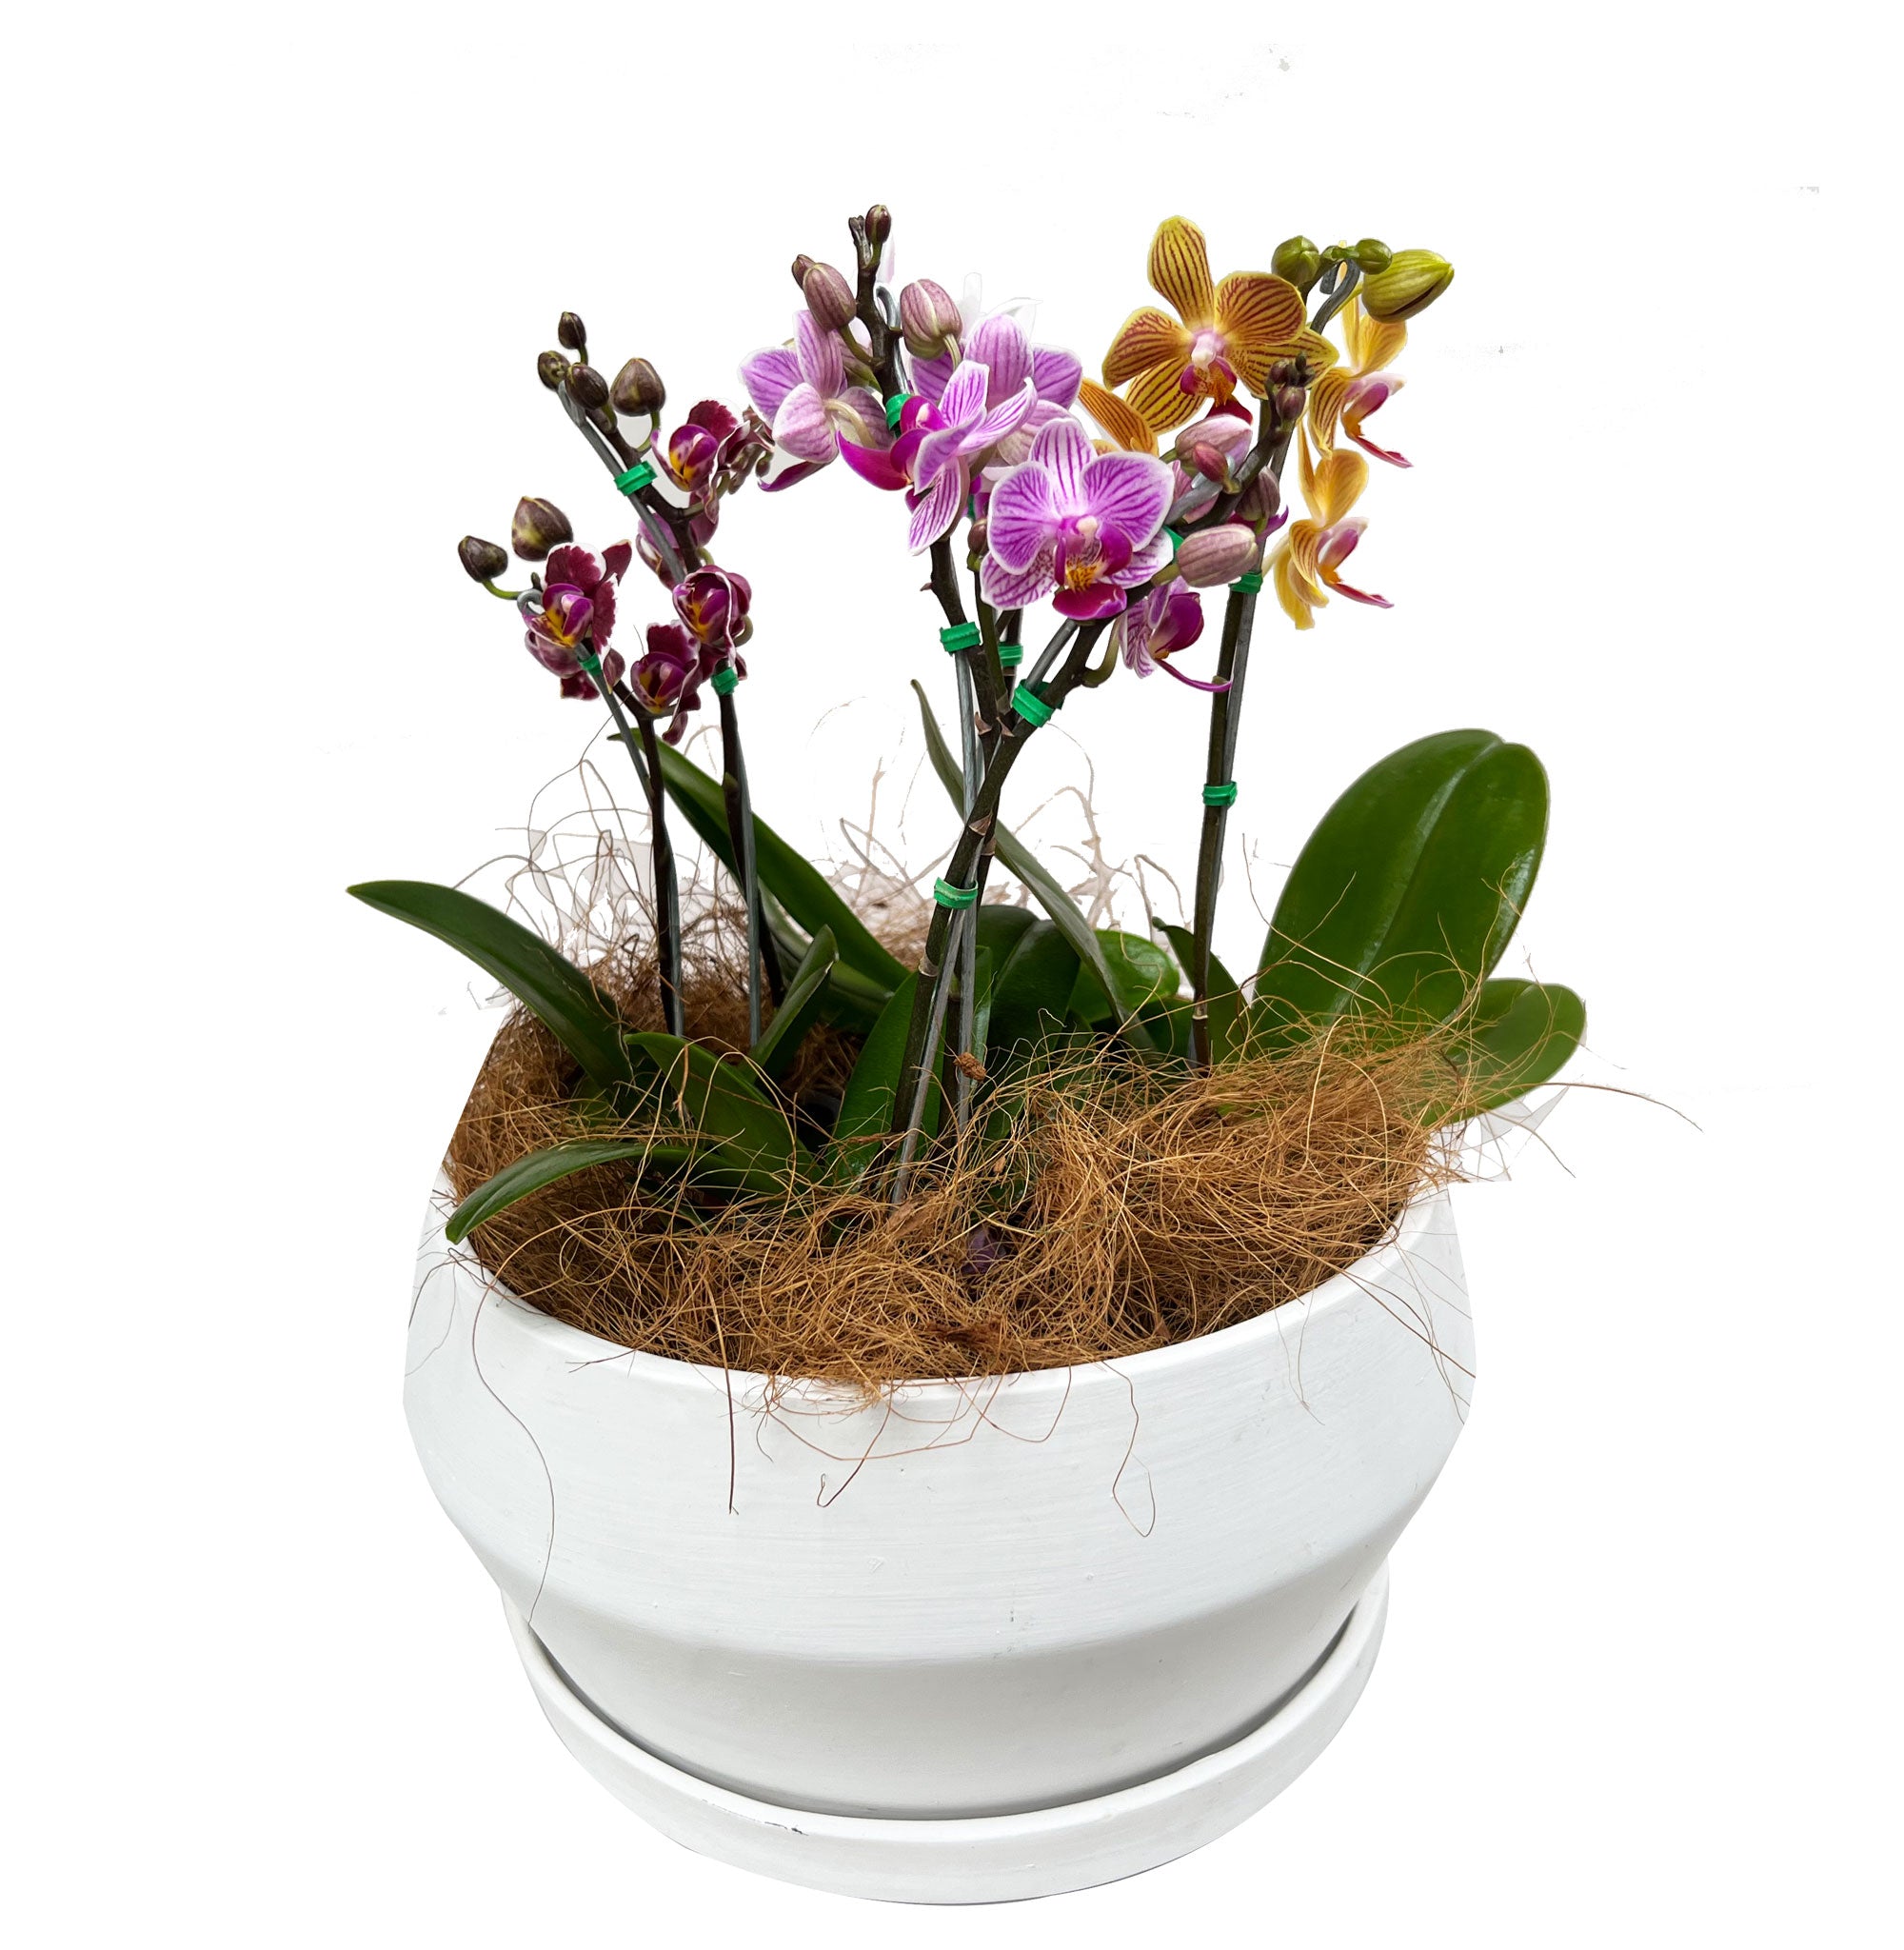 Matera de cerámica blanca con mini orquídeas (no incluidas)